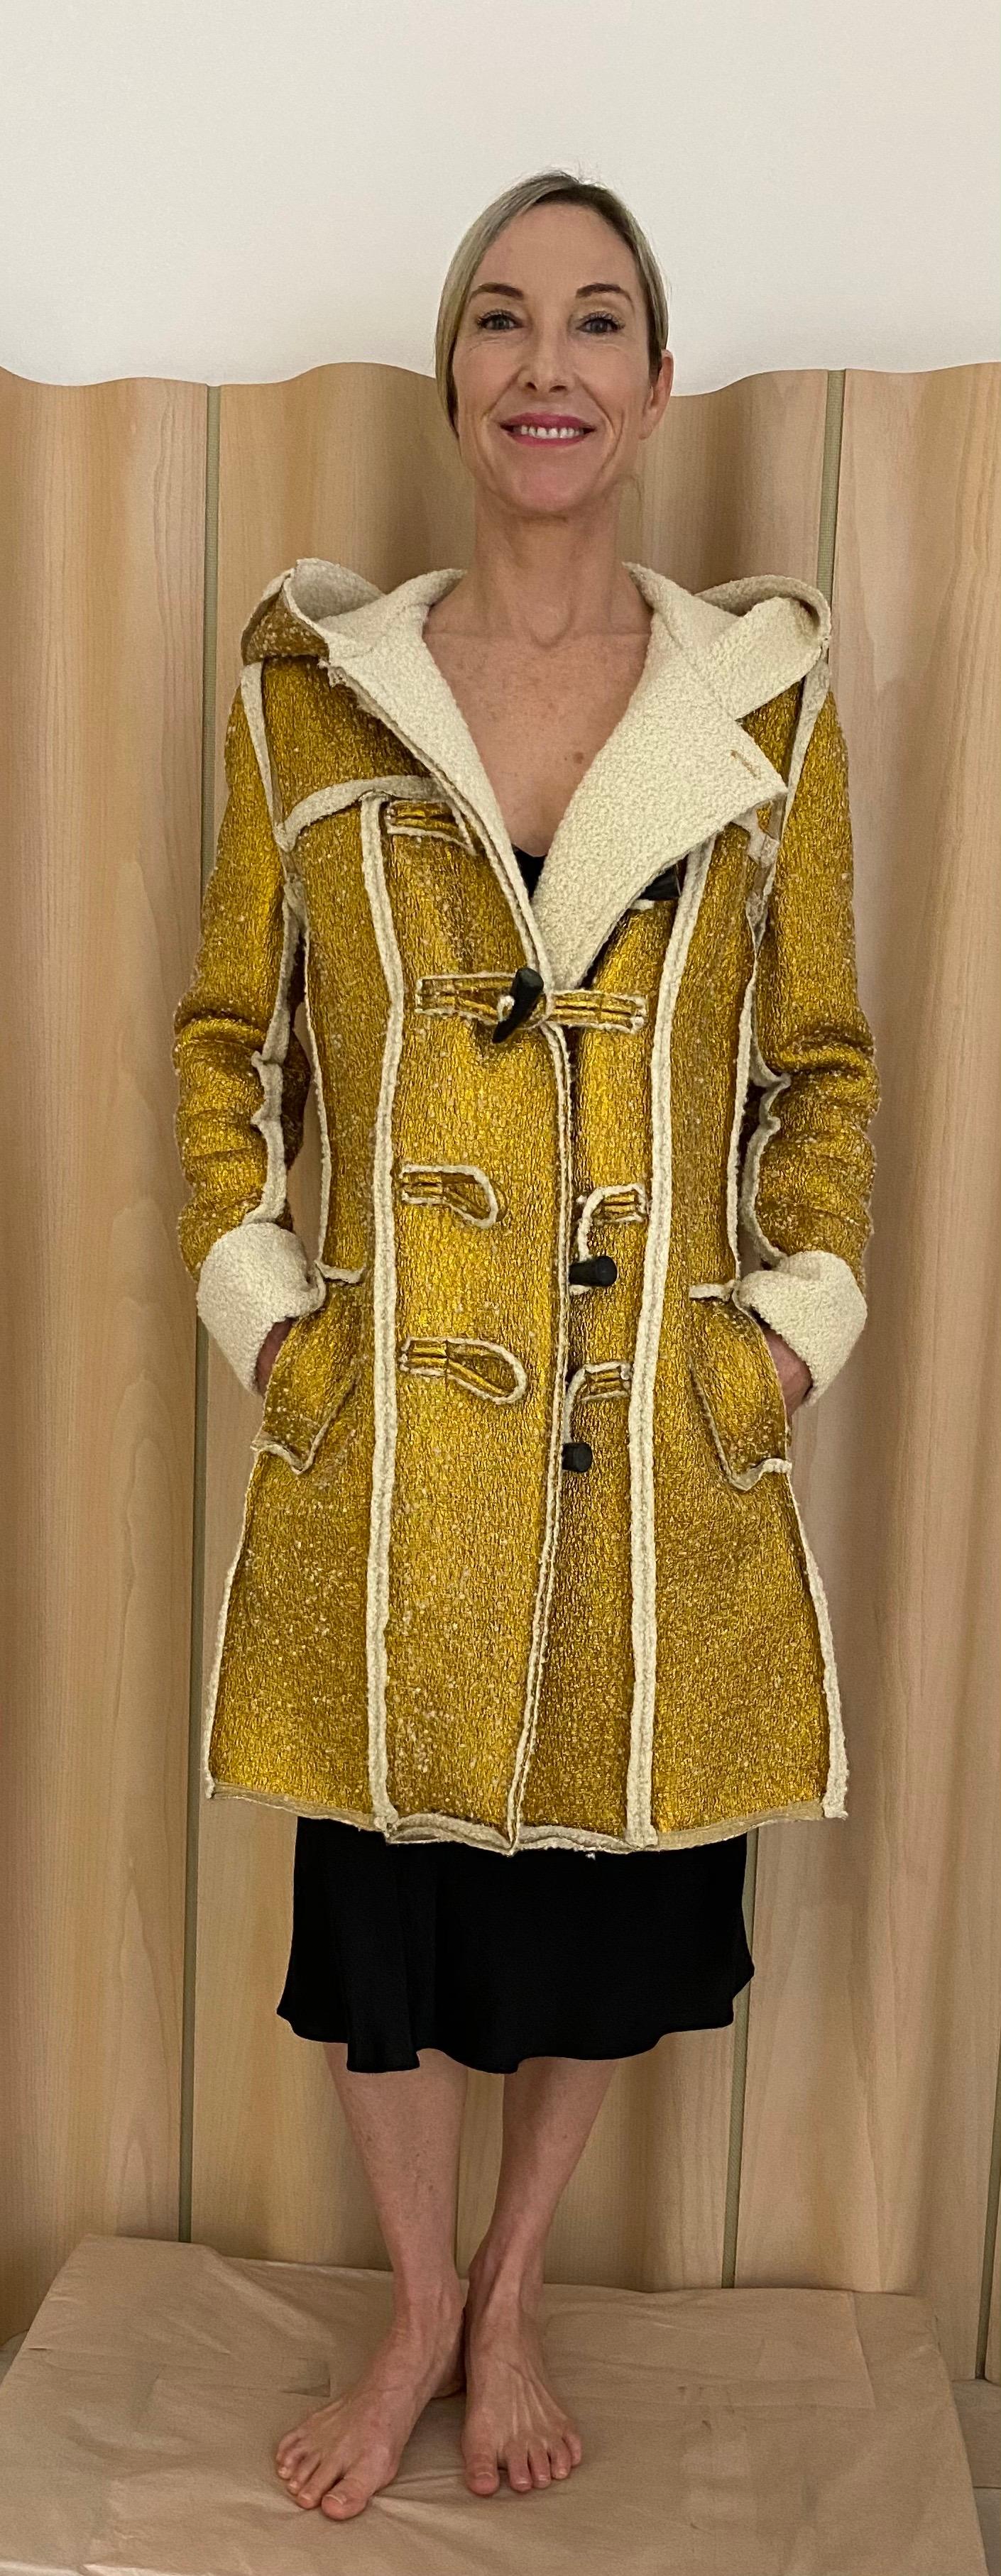 2015 LANVIN Caban en or métallisé doublé de shearling. Boutons de basculement. Manteau à capuche.
Le manteau a des poches. Marqué taille 40
Mesure : 
Buste : 40